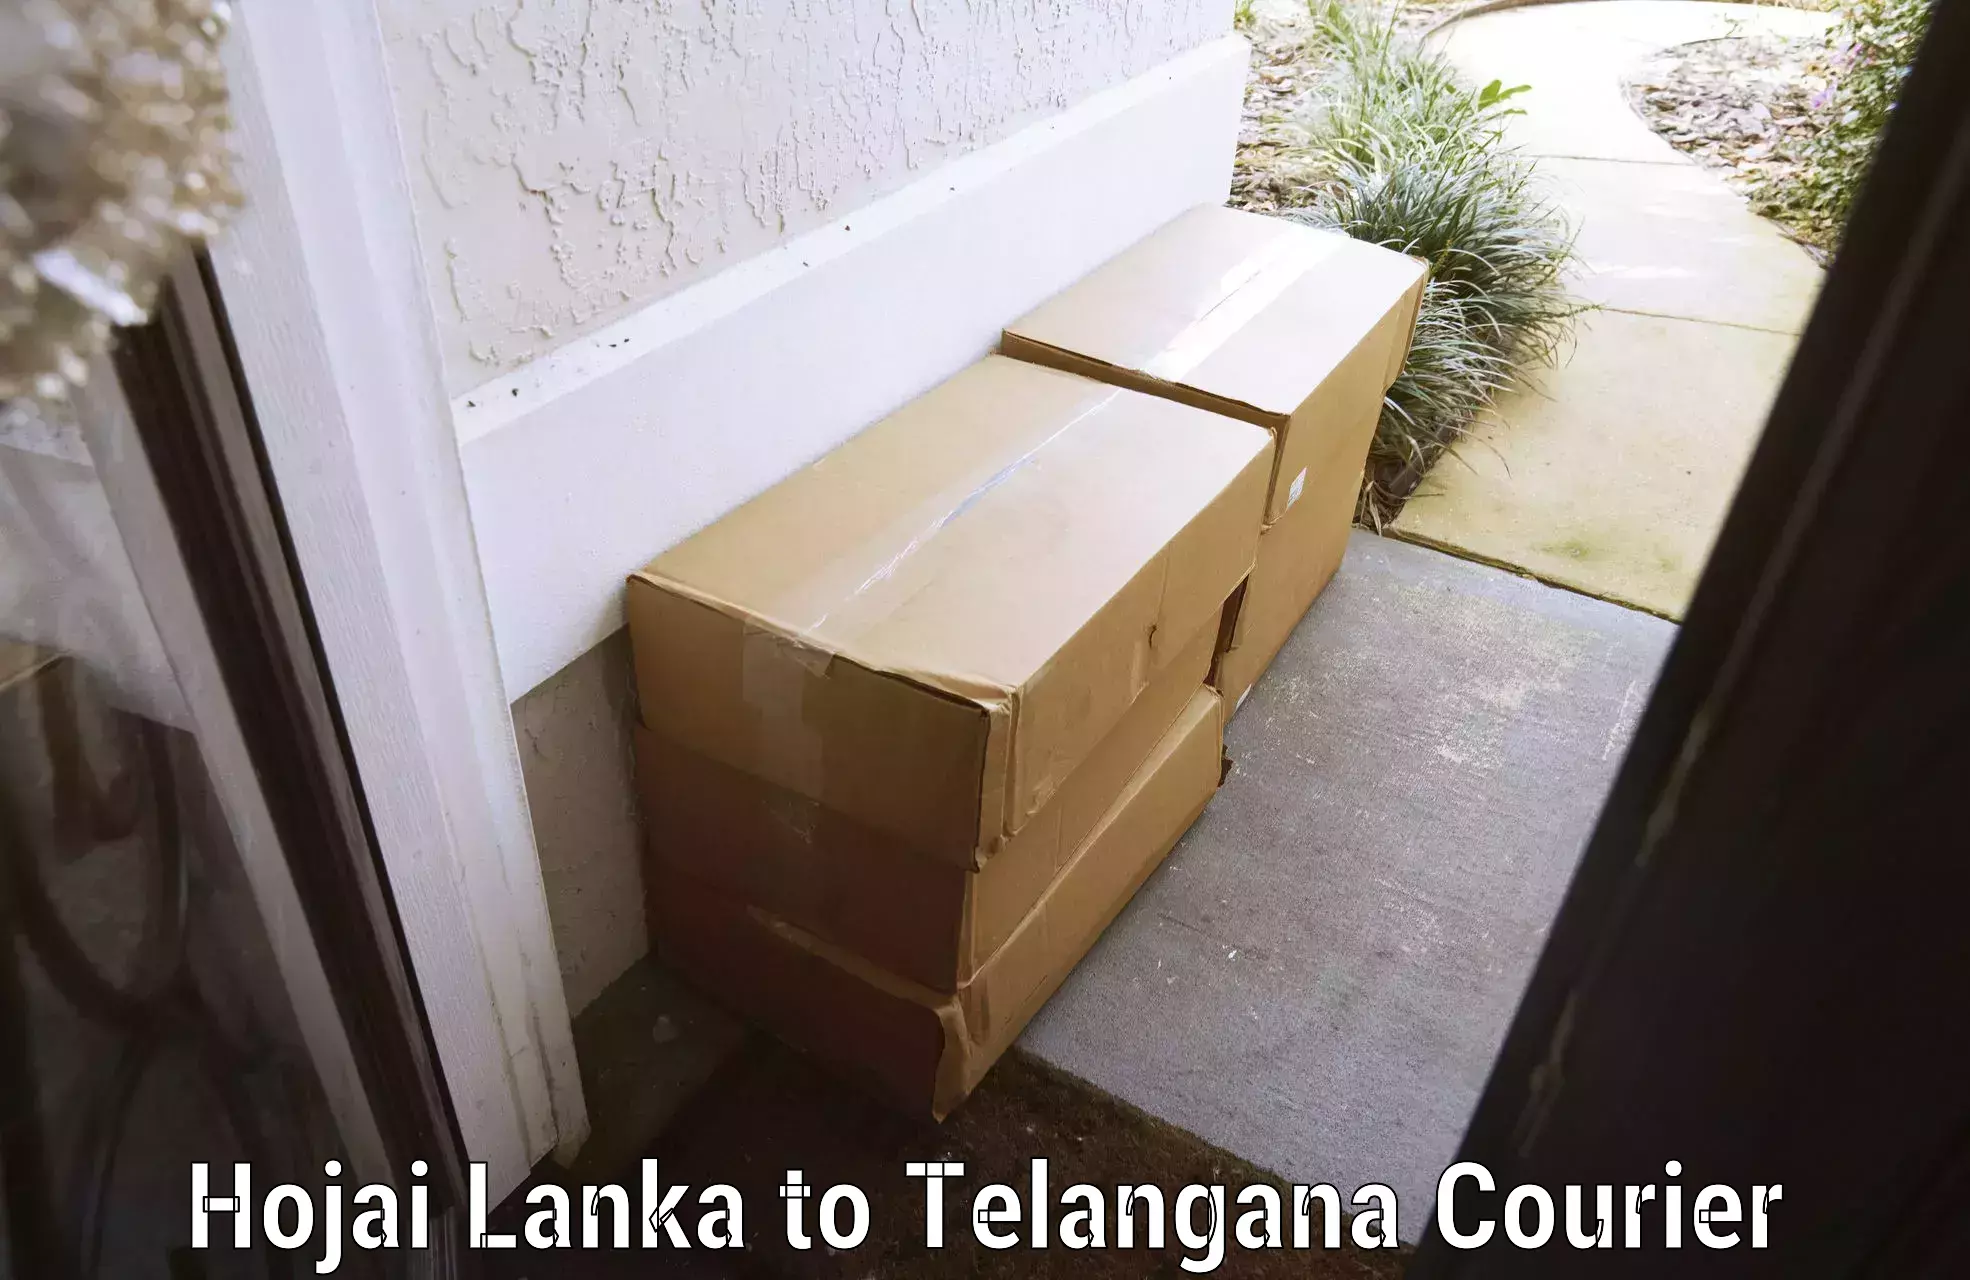 Professional baggage transport Hojai Lanka to Telangana